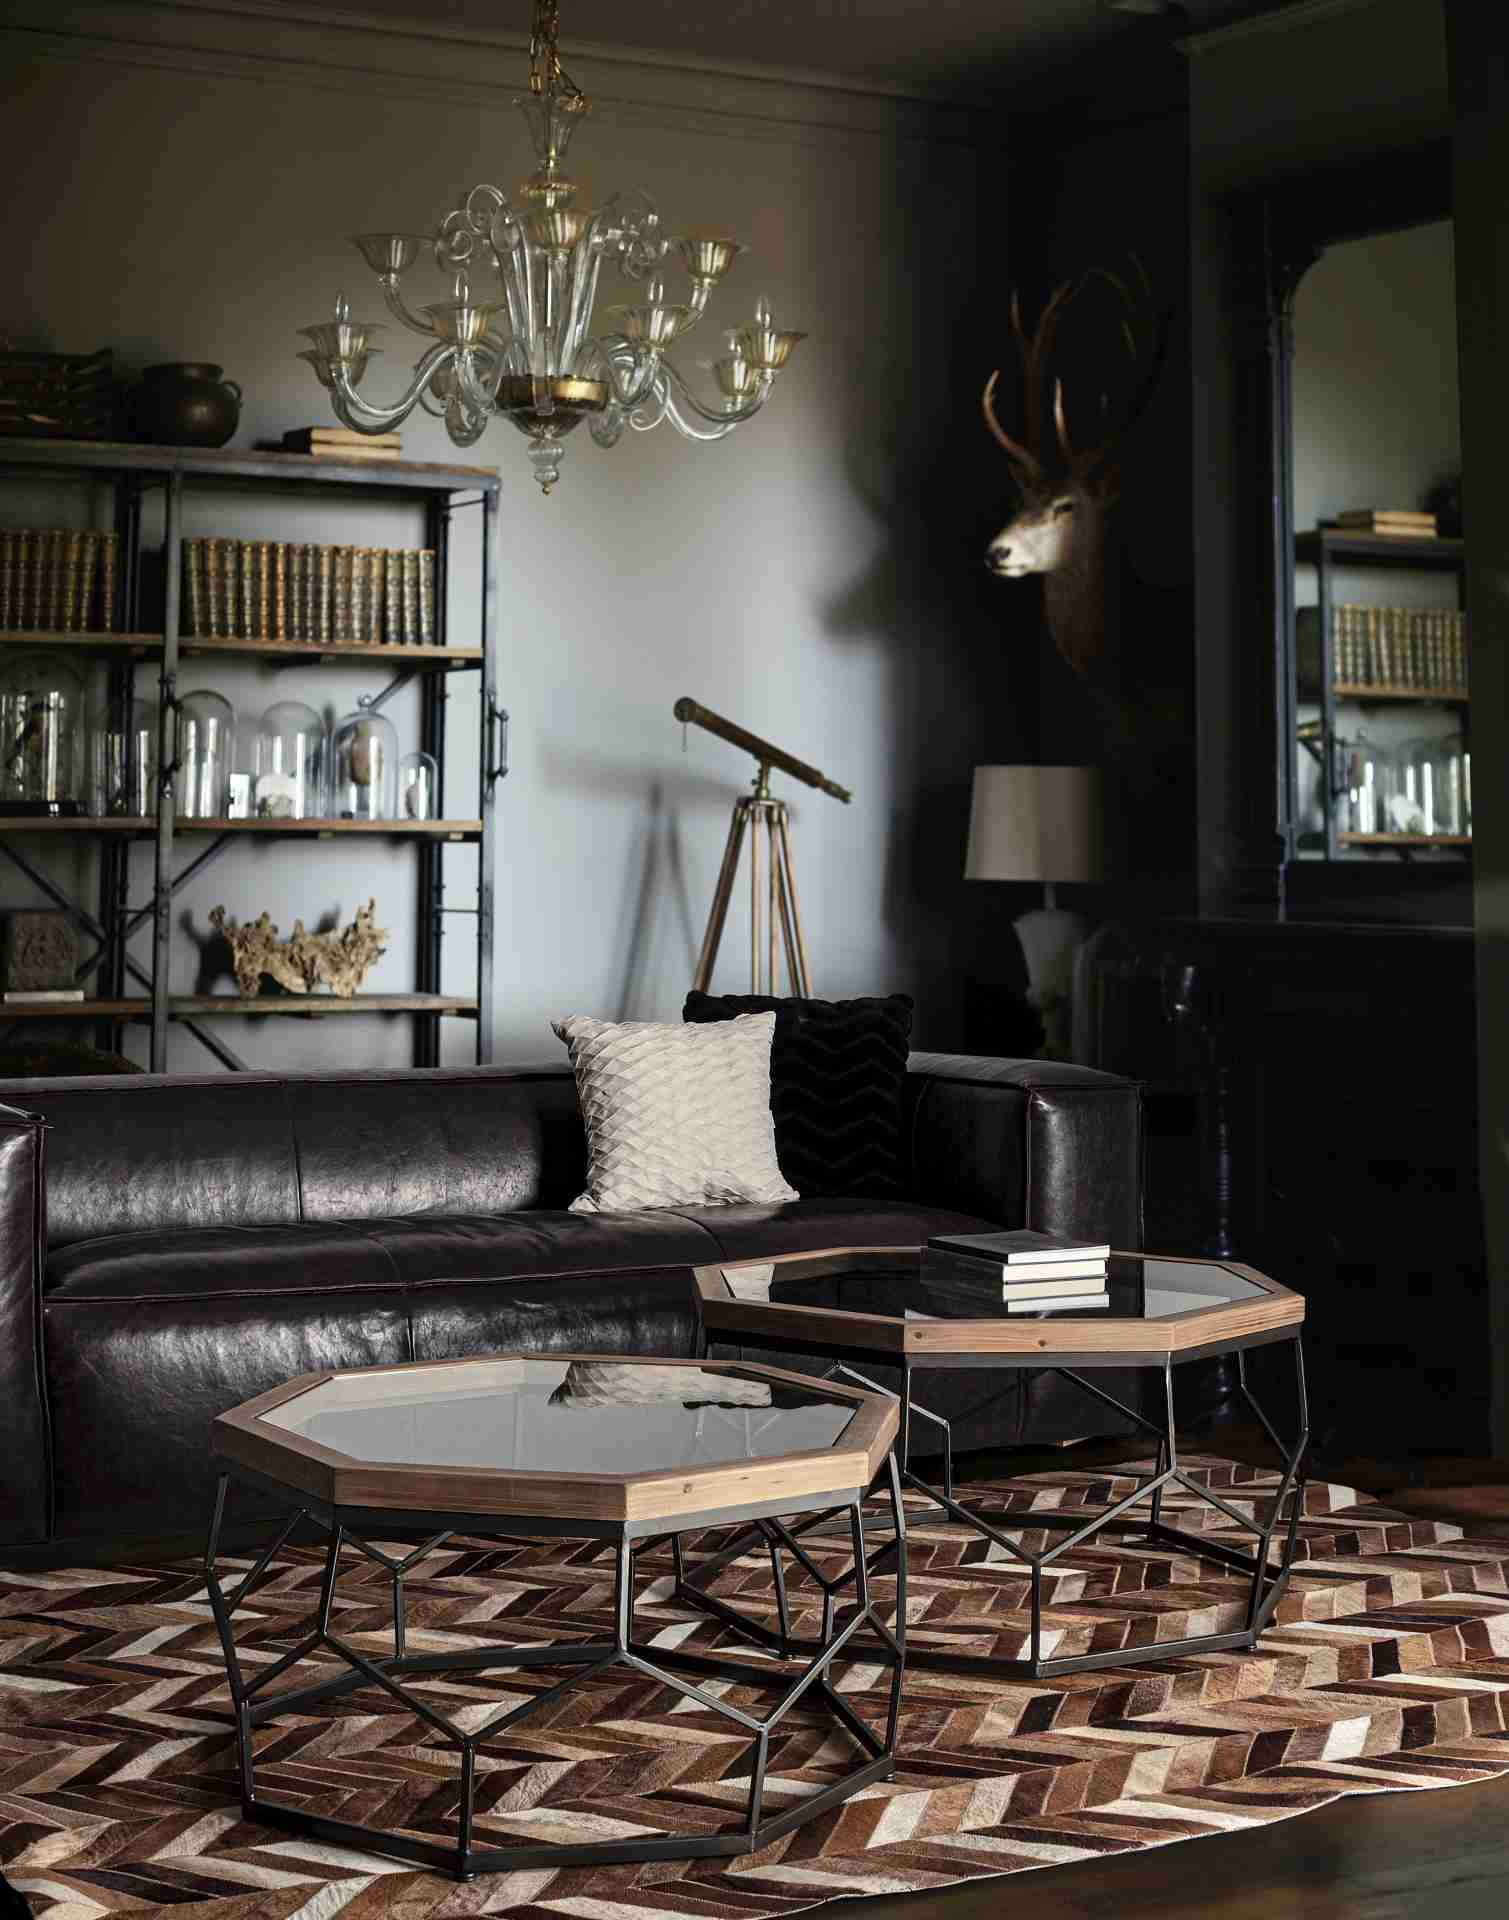 Das Sofa Dakota überzeugt mit seinem klassischen Design. Gefertigt wurde es aus Kunstleder, welches einen braunen Farbton besitzt. Das Gestell ist aus Eichenholz und hat eine natürliche Farbe. Das Sofa ist in der Ausführung als 3-Sitzer. Die Breite beträg